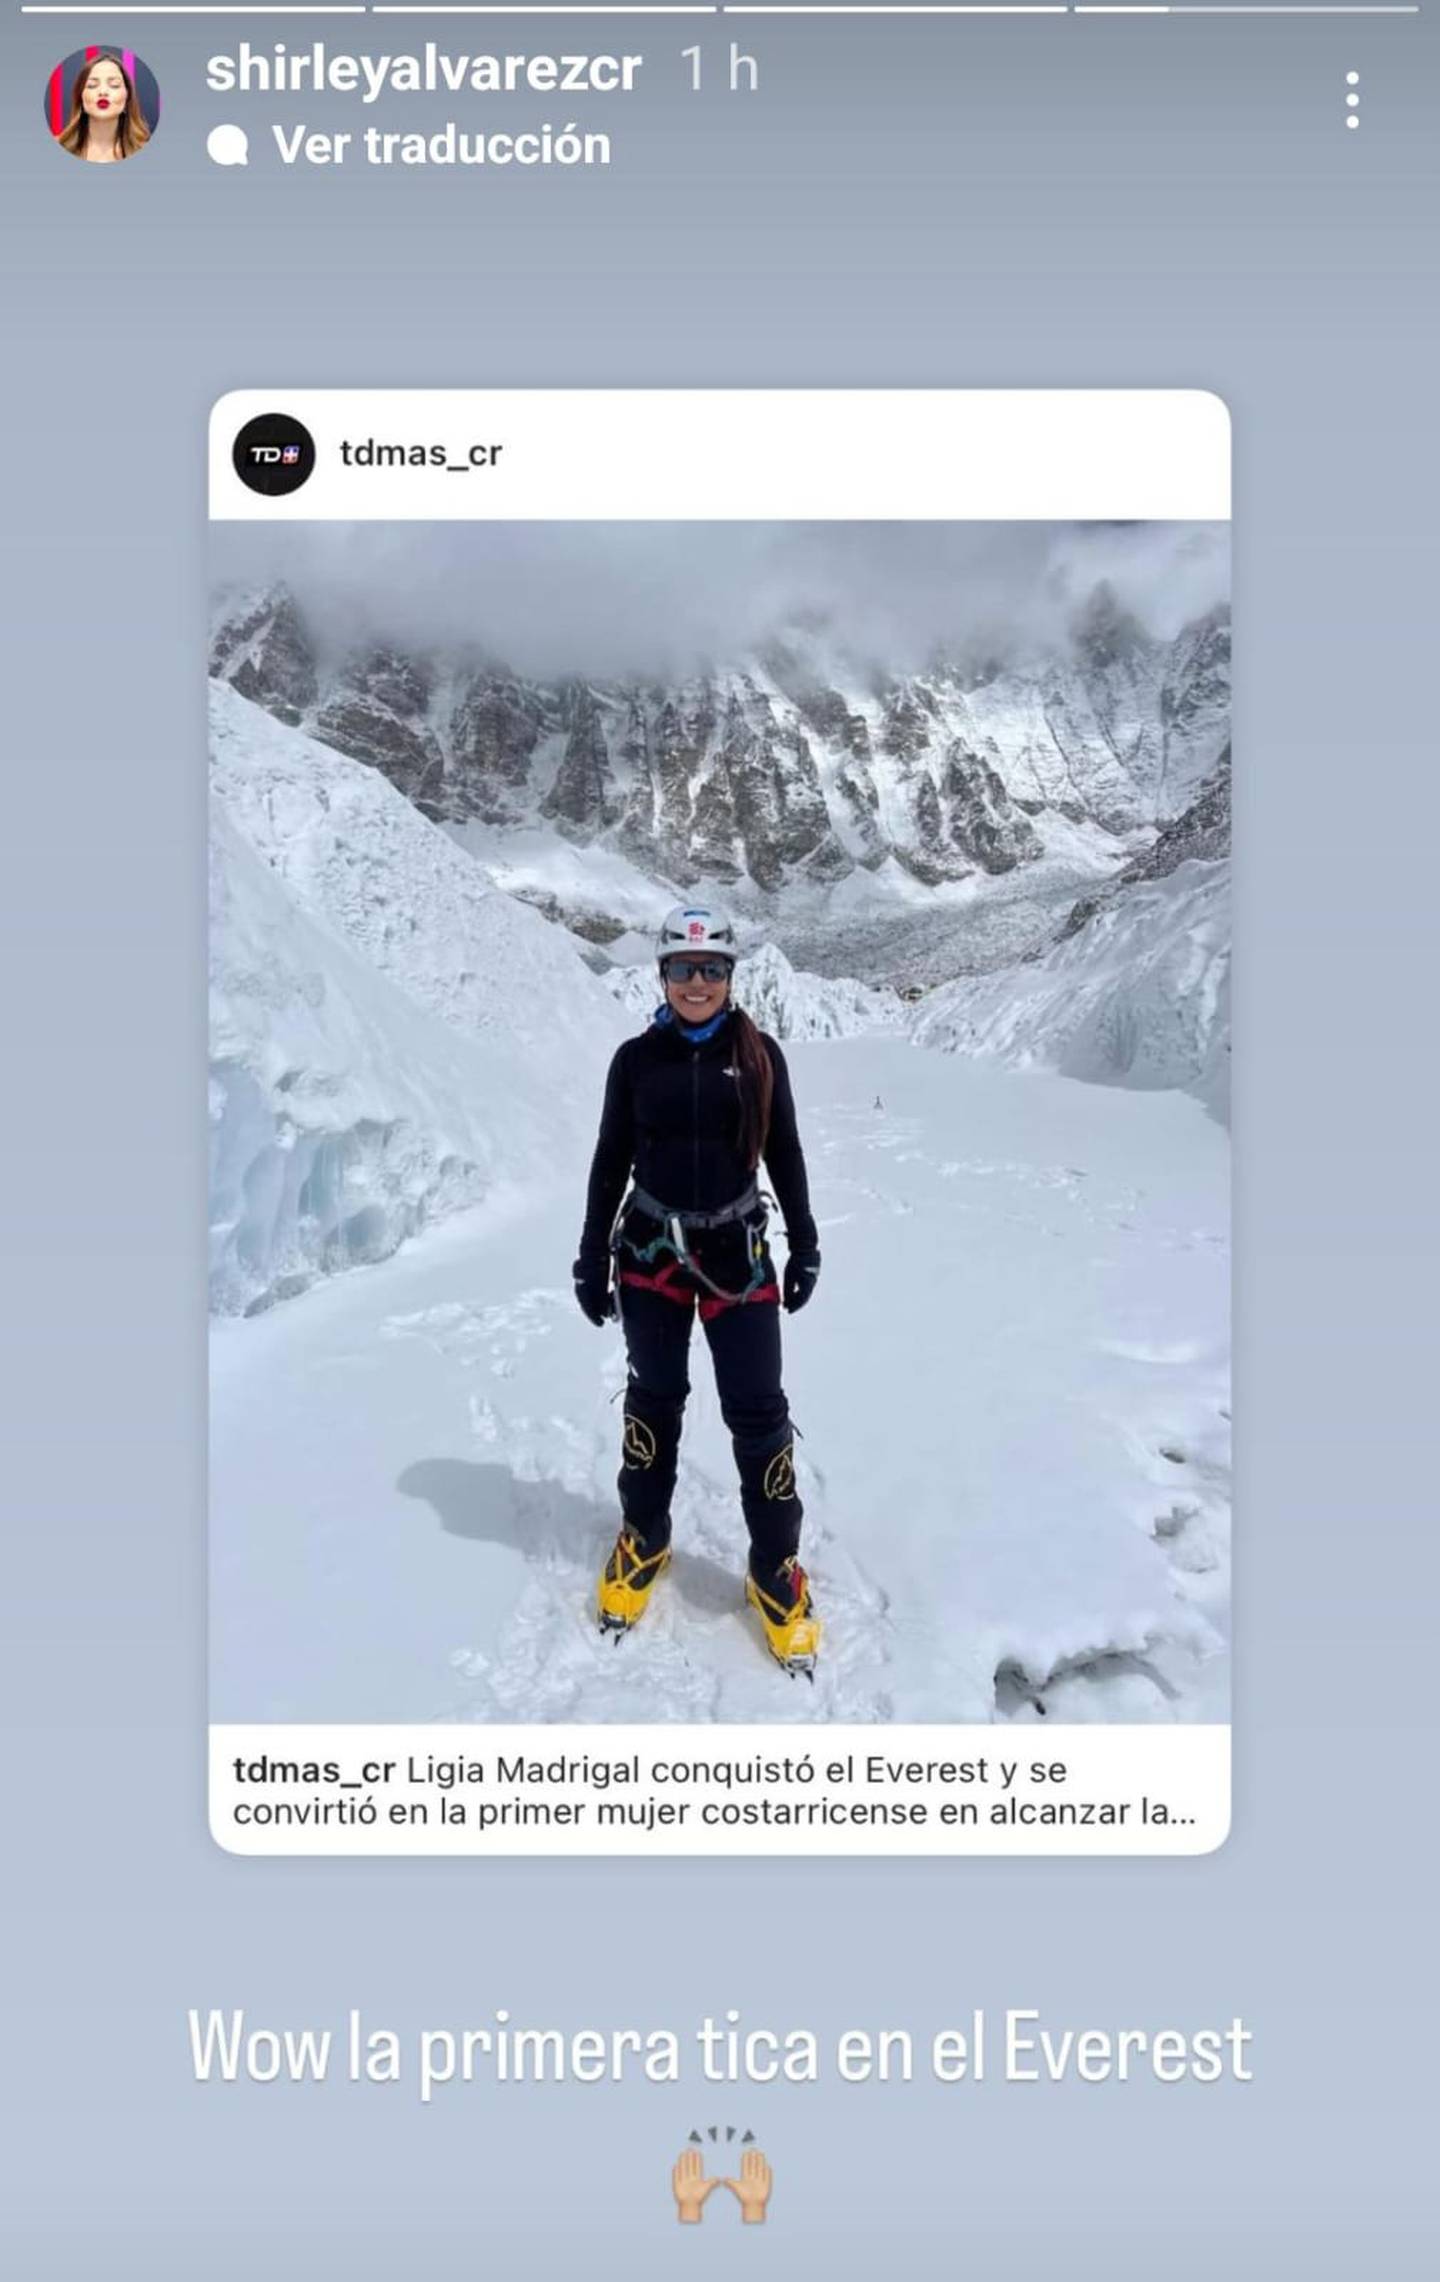 Ligia Madrigal es la primera tica en escalar el Everest y Shirley Álvarez la felicitó.